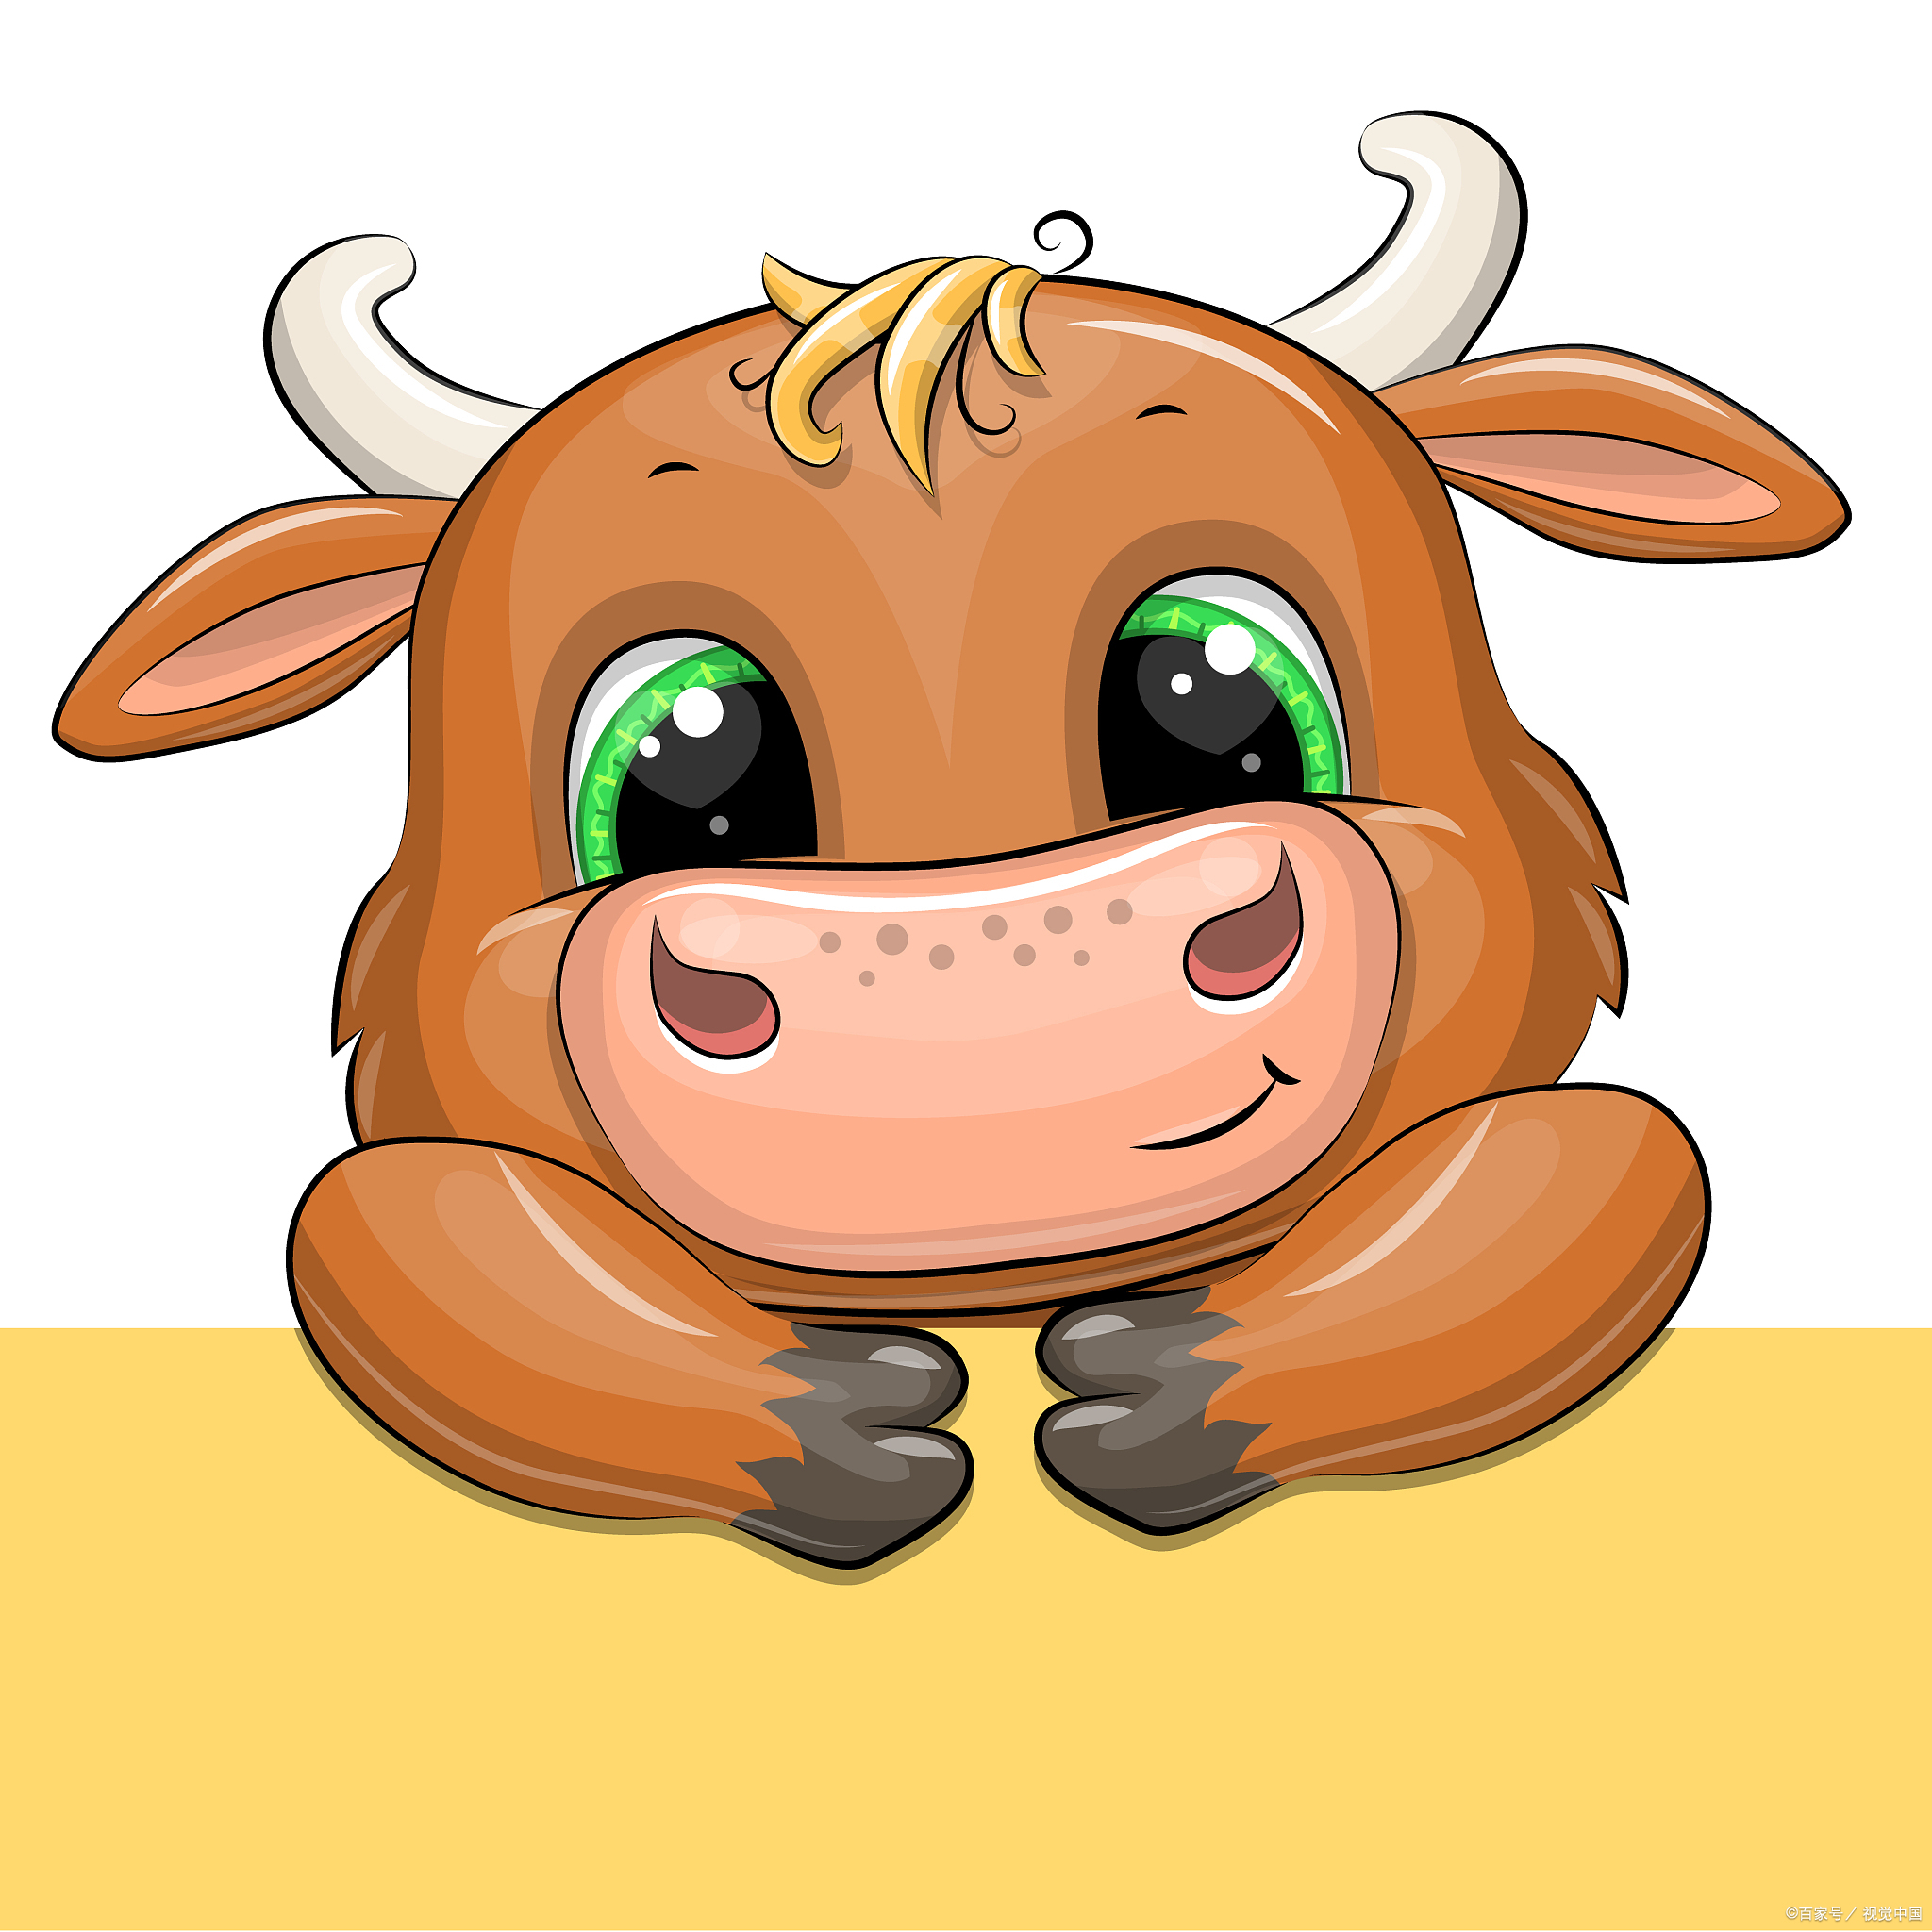 单词ox来源于古英语中的ochs,意思是牛